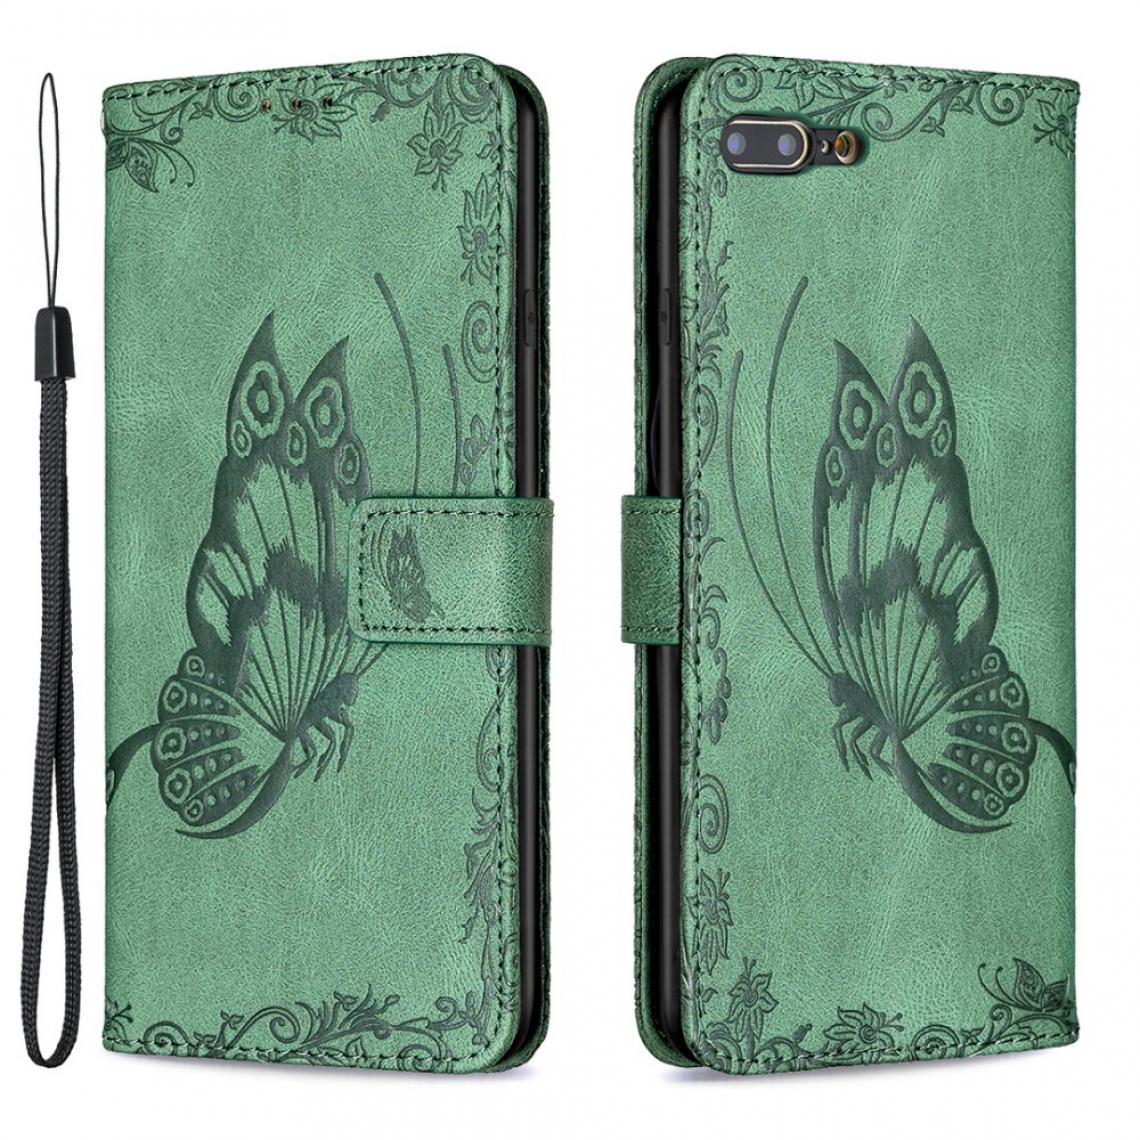 Other - Etui en PU Empreinte Papillon Fleur vert pour votre Apple iPhone 8 Plus/7 Plus - Coque, étui smartphone